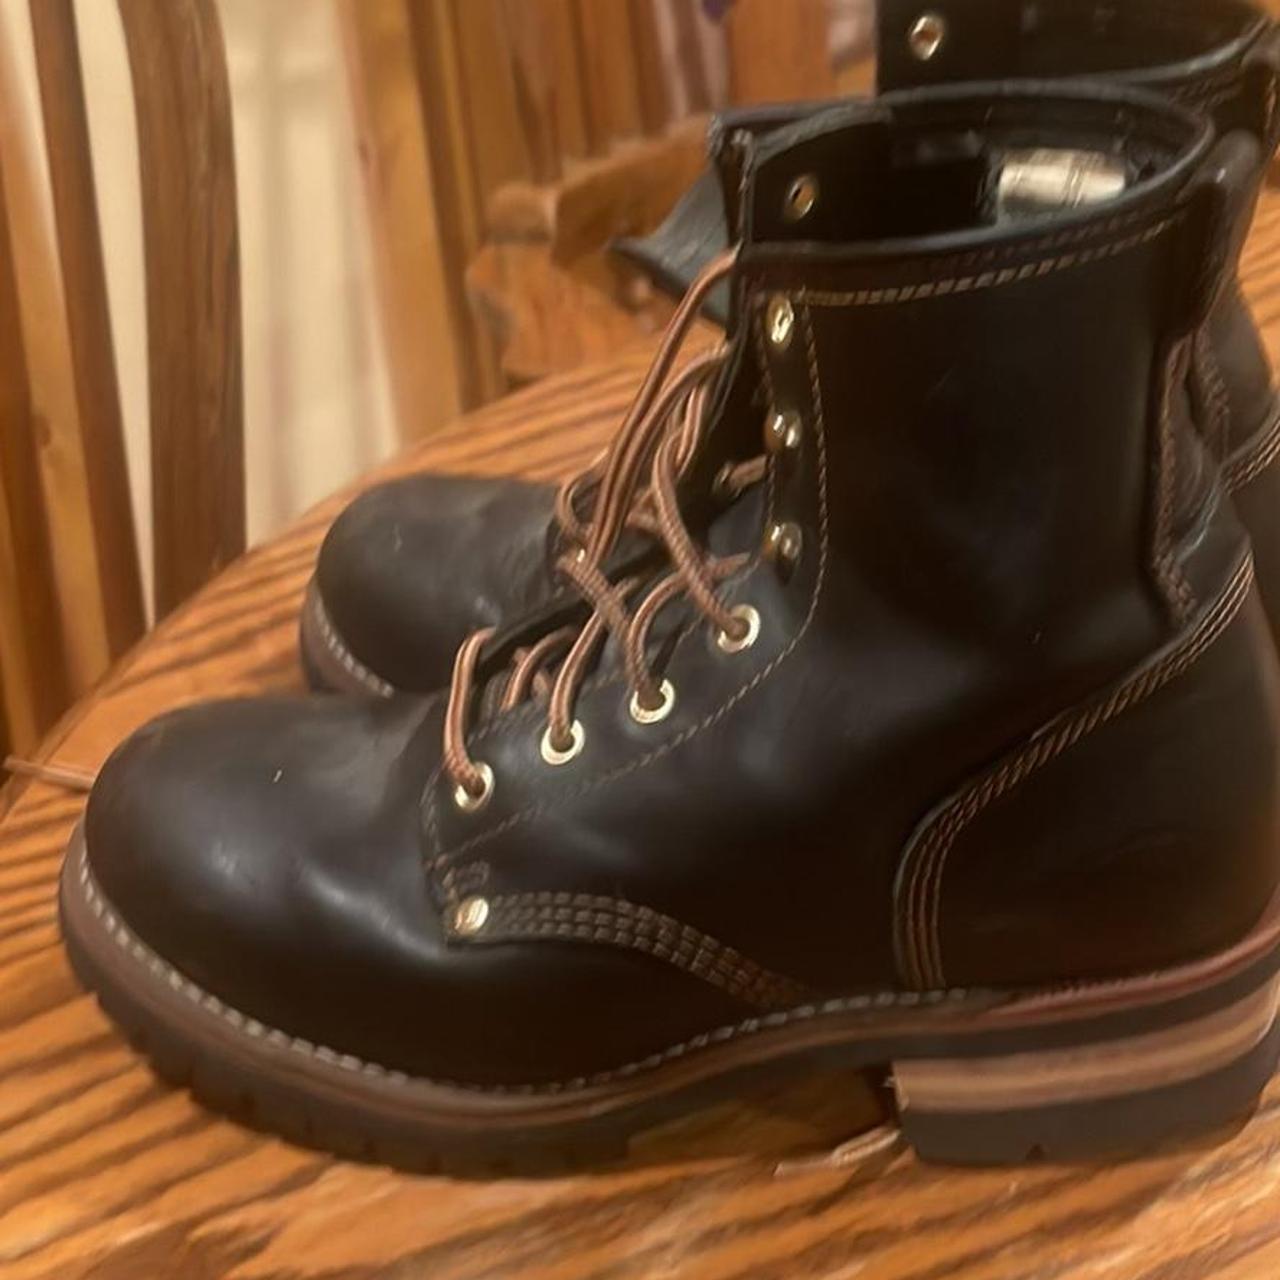 Vintage black leather sketchers work boots 9.5 in men’s - Depop